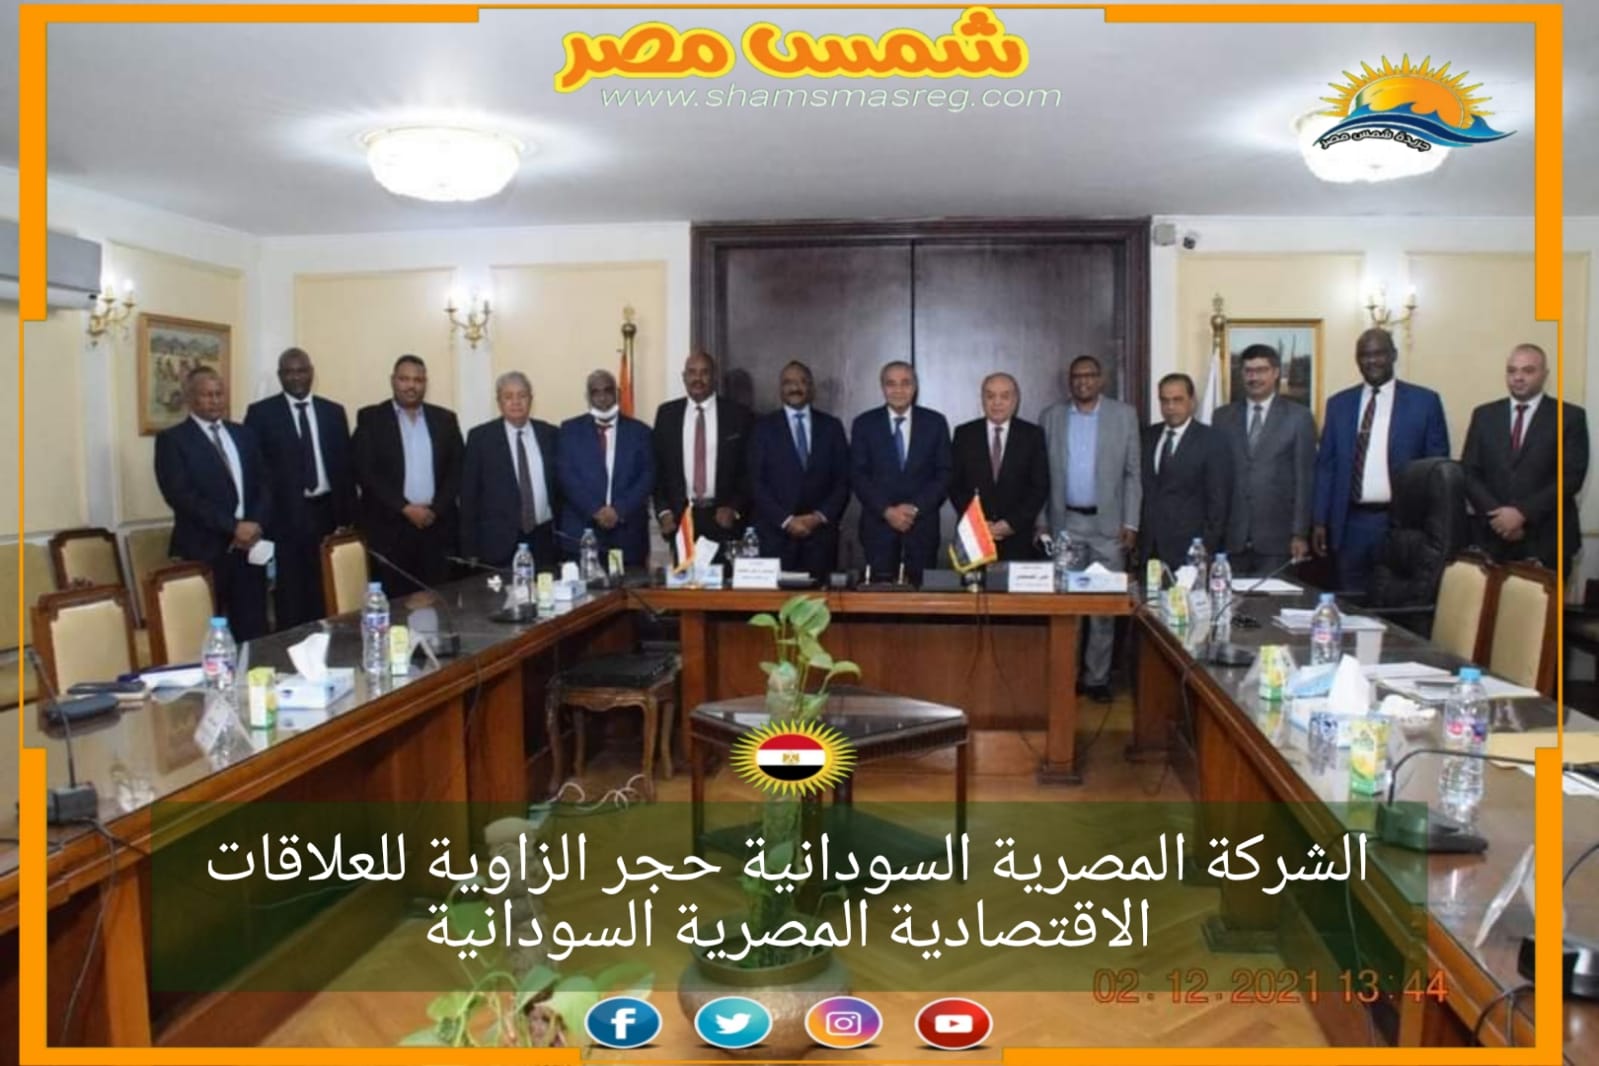 |شمس مصر|.... الشركة المصرية السودانية حجر الزاوية للعلاقات الاقتصادية المصرية السودانية.